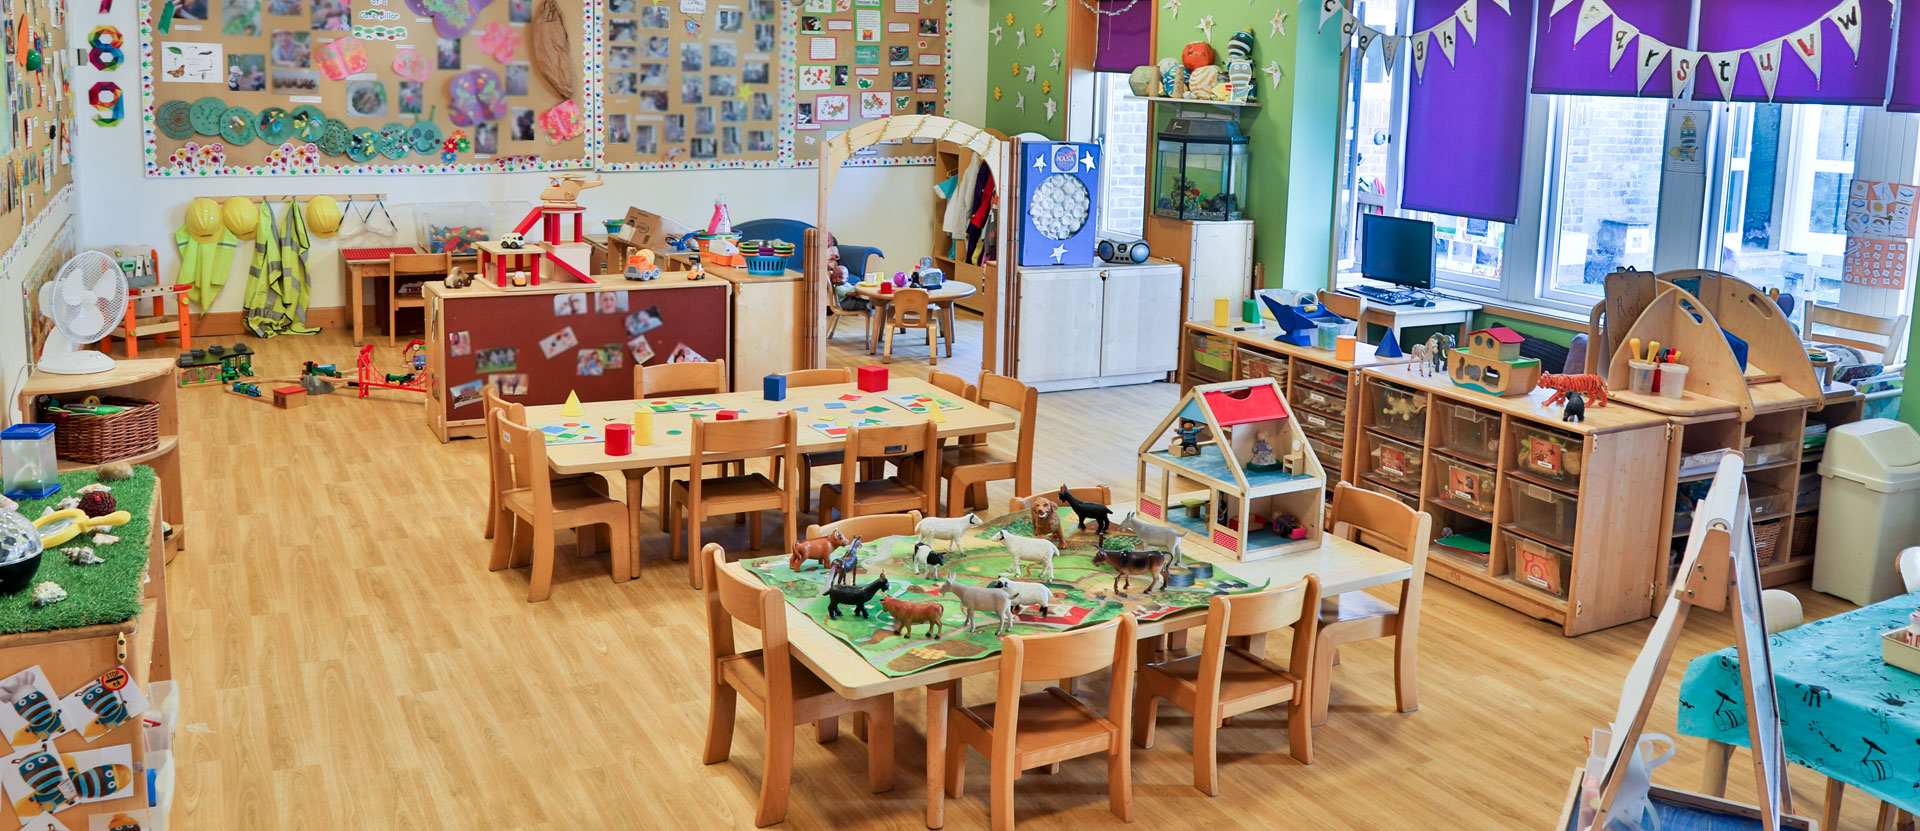 Mongewell Day Nursery and Preschool